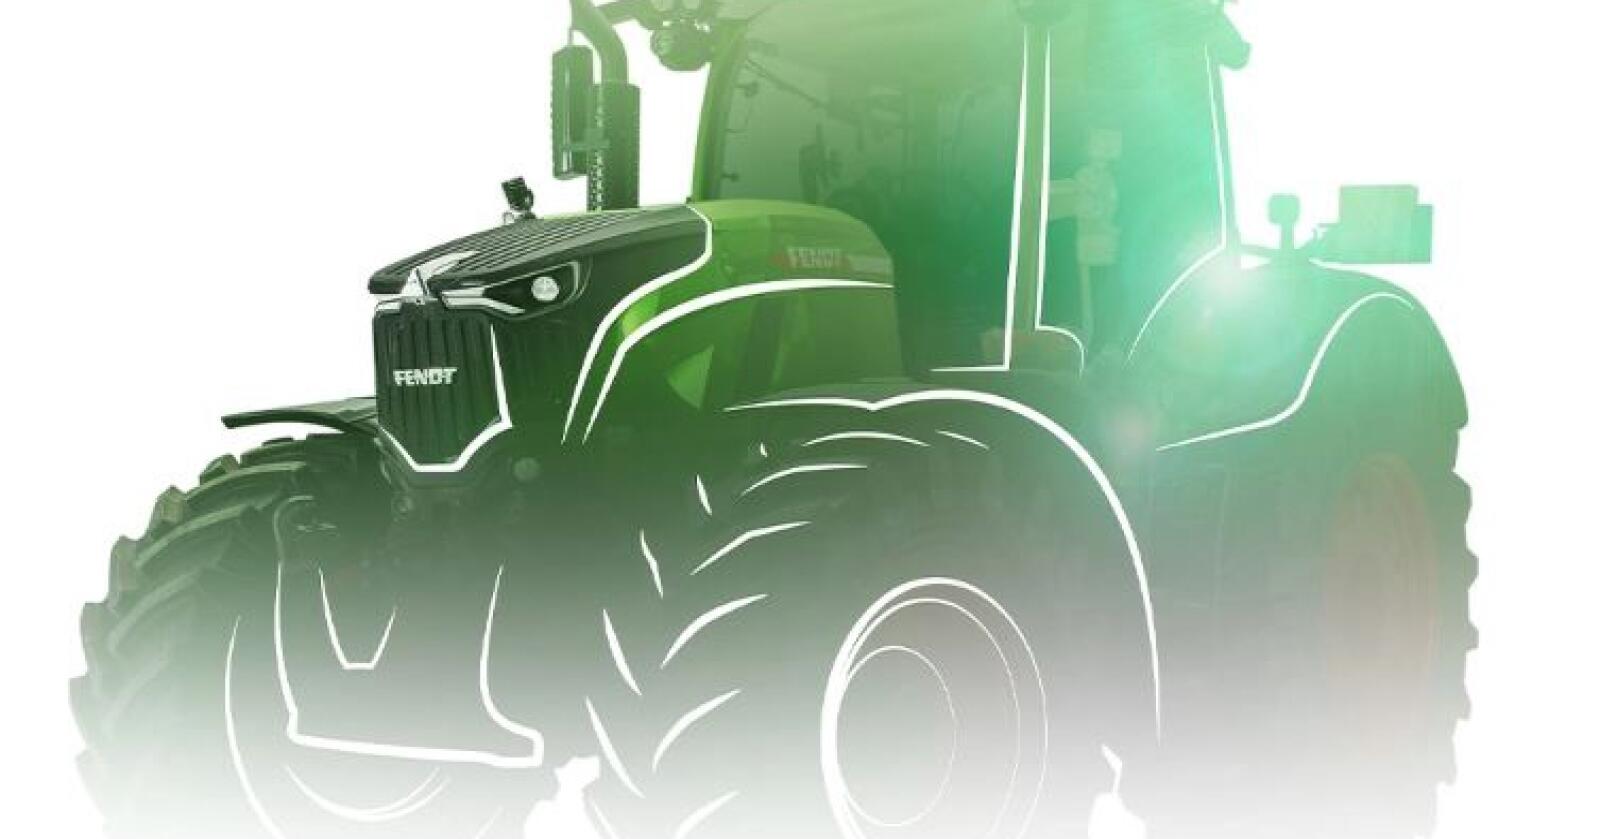 Design: Tegninger av den nye traktoren hinter om at den får et oppgradert design.